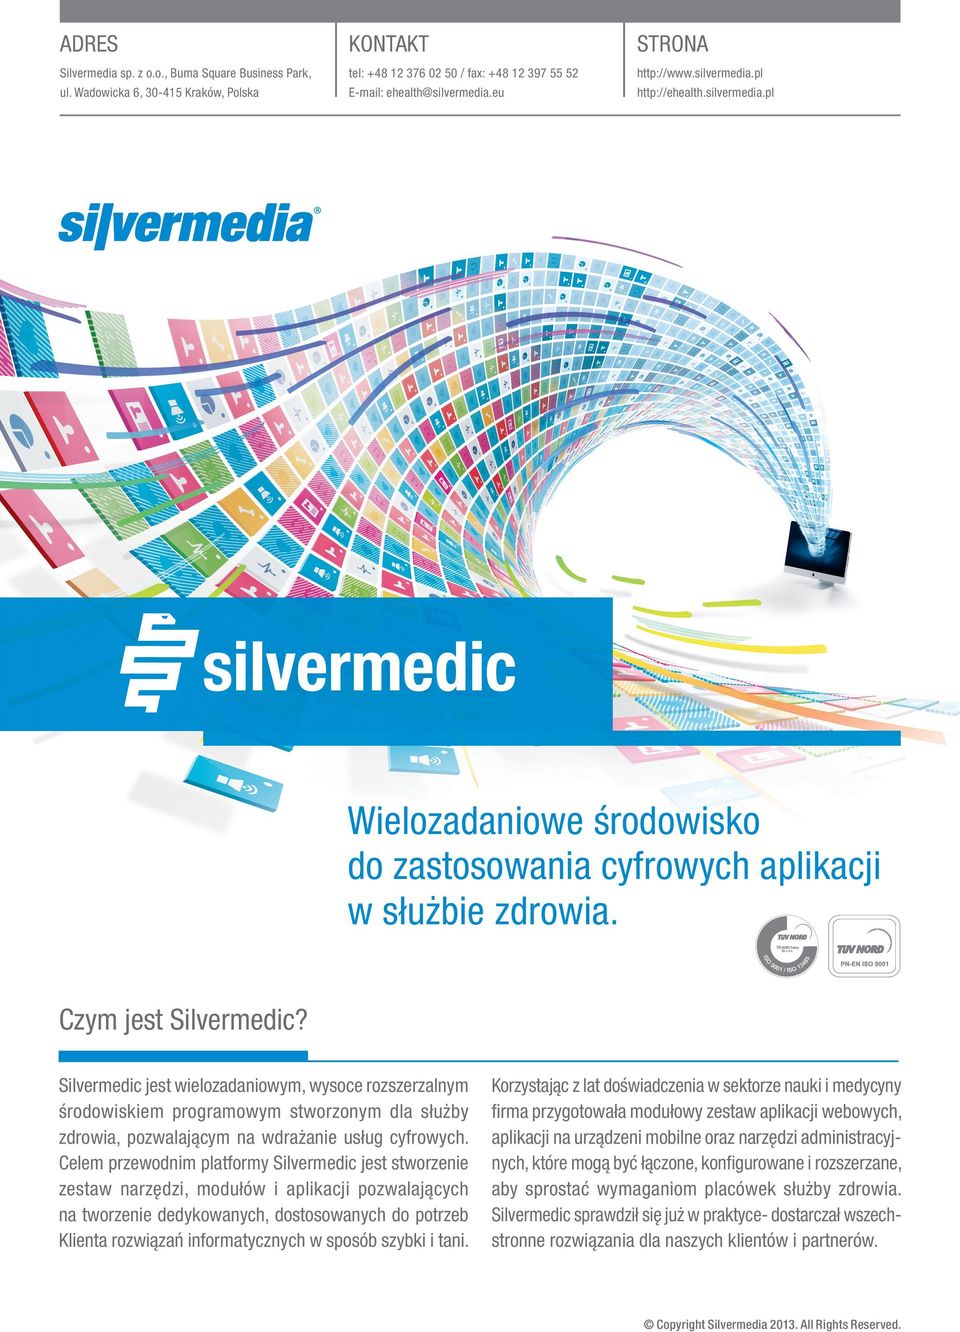 Silvermedic jest wielozadaniowym, wysoce rozszerzalnym środowiskiem programowym stworzonym dla służby zdrowia, pozwalającym na wdrażanie usług cyfrowych.